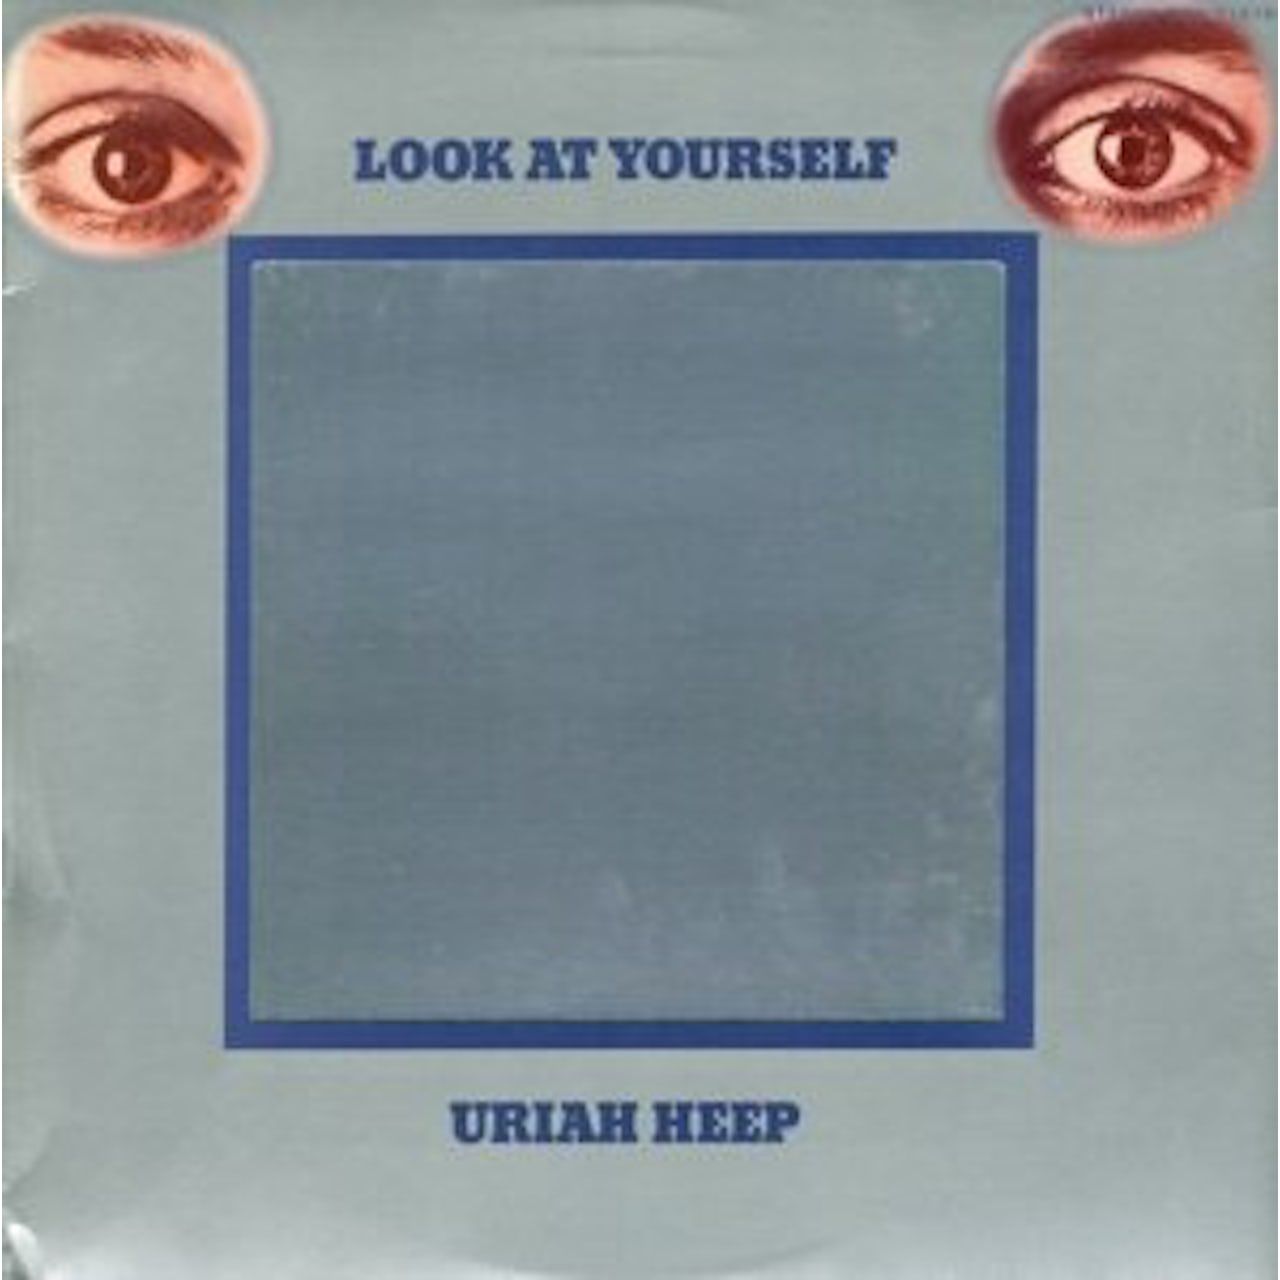 5414939928376, Виниловая пластинка Uriah Heep, Look At Yourself uriah heep look at yourself [3 s panel digipak]